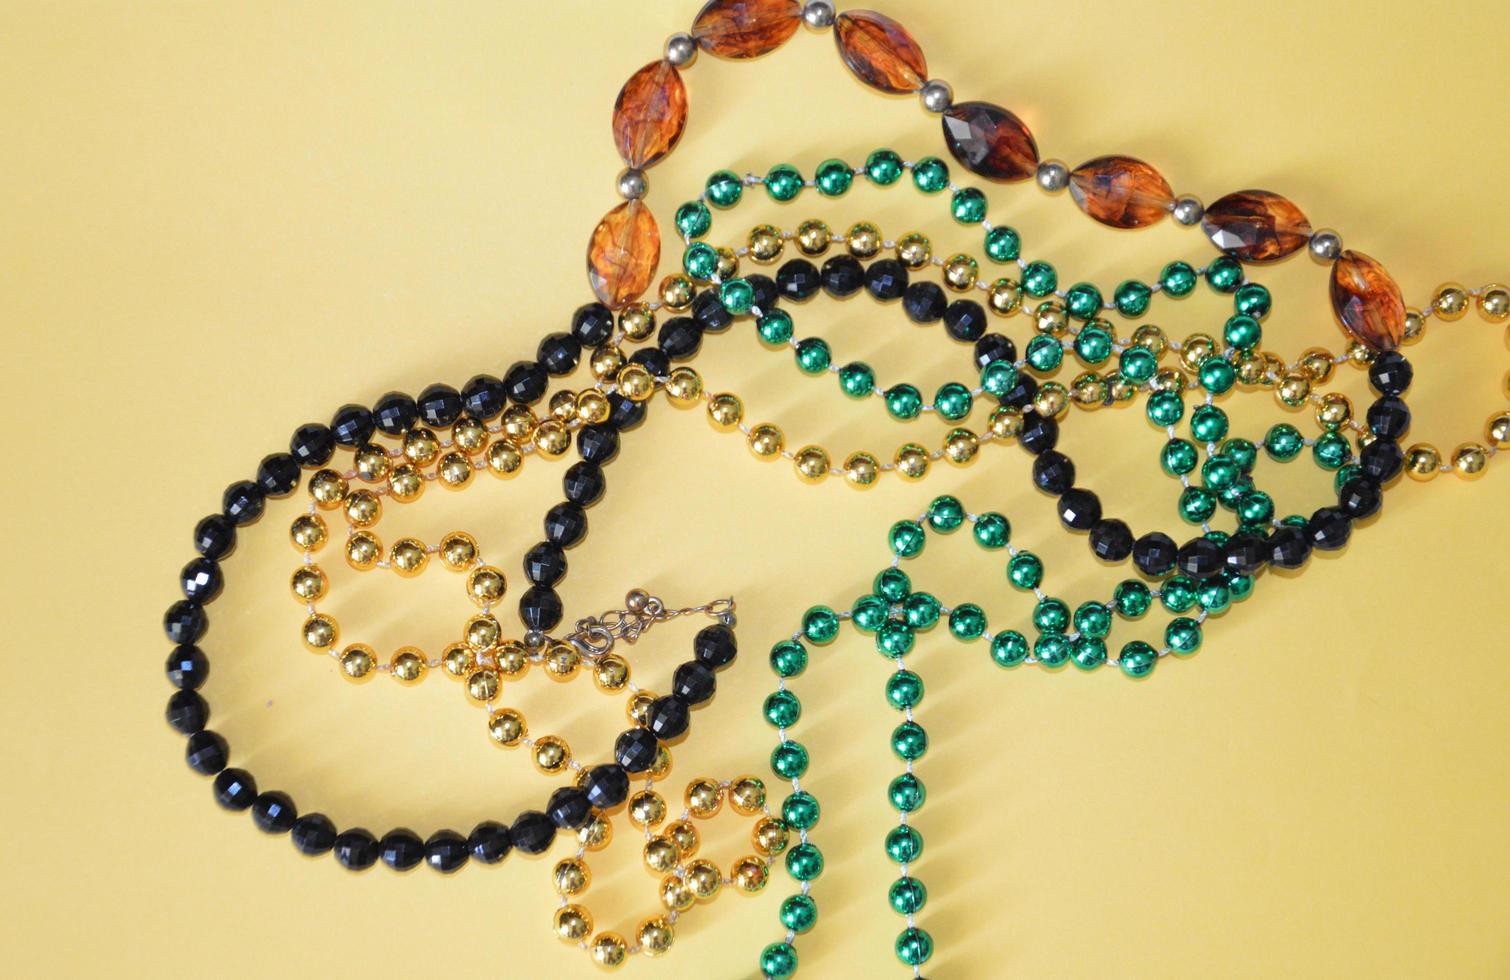 mehrfarbige Perlen als isoliertes Objekt auf einem Hintergrund foto